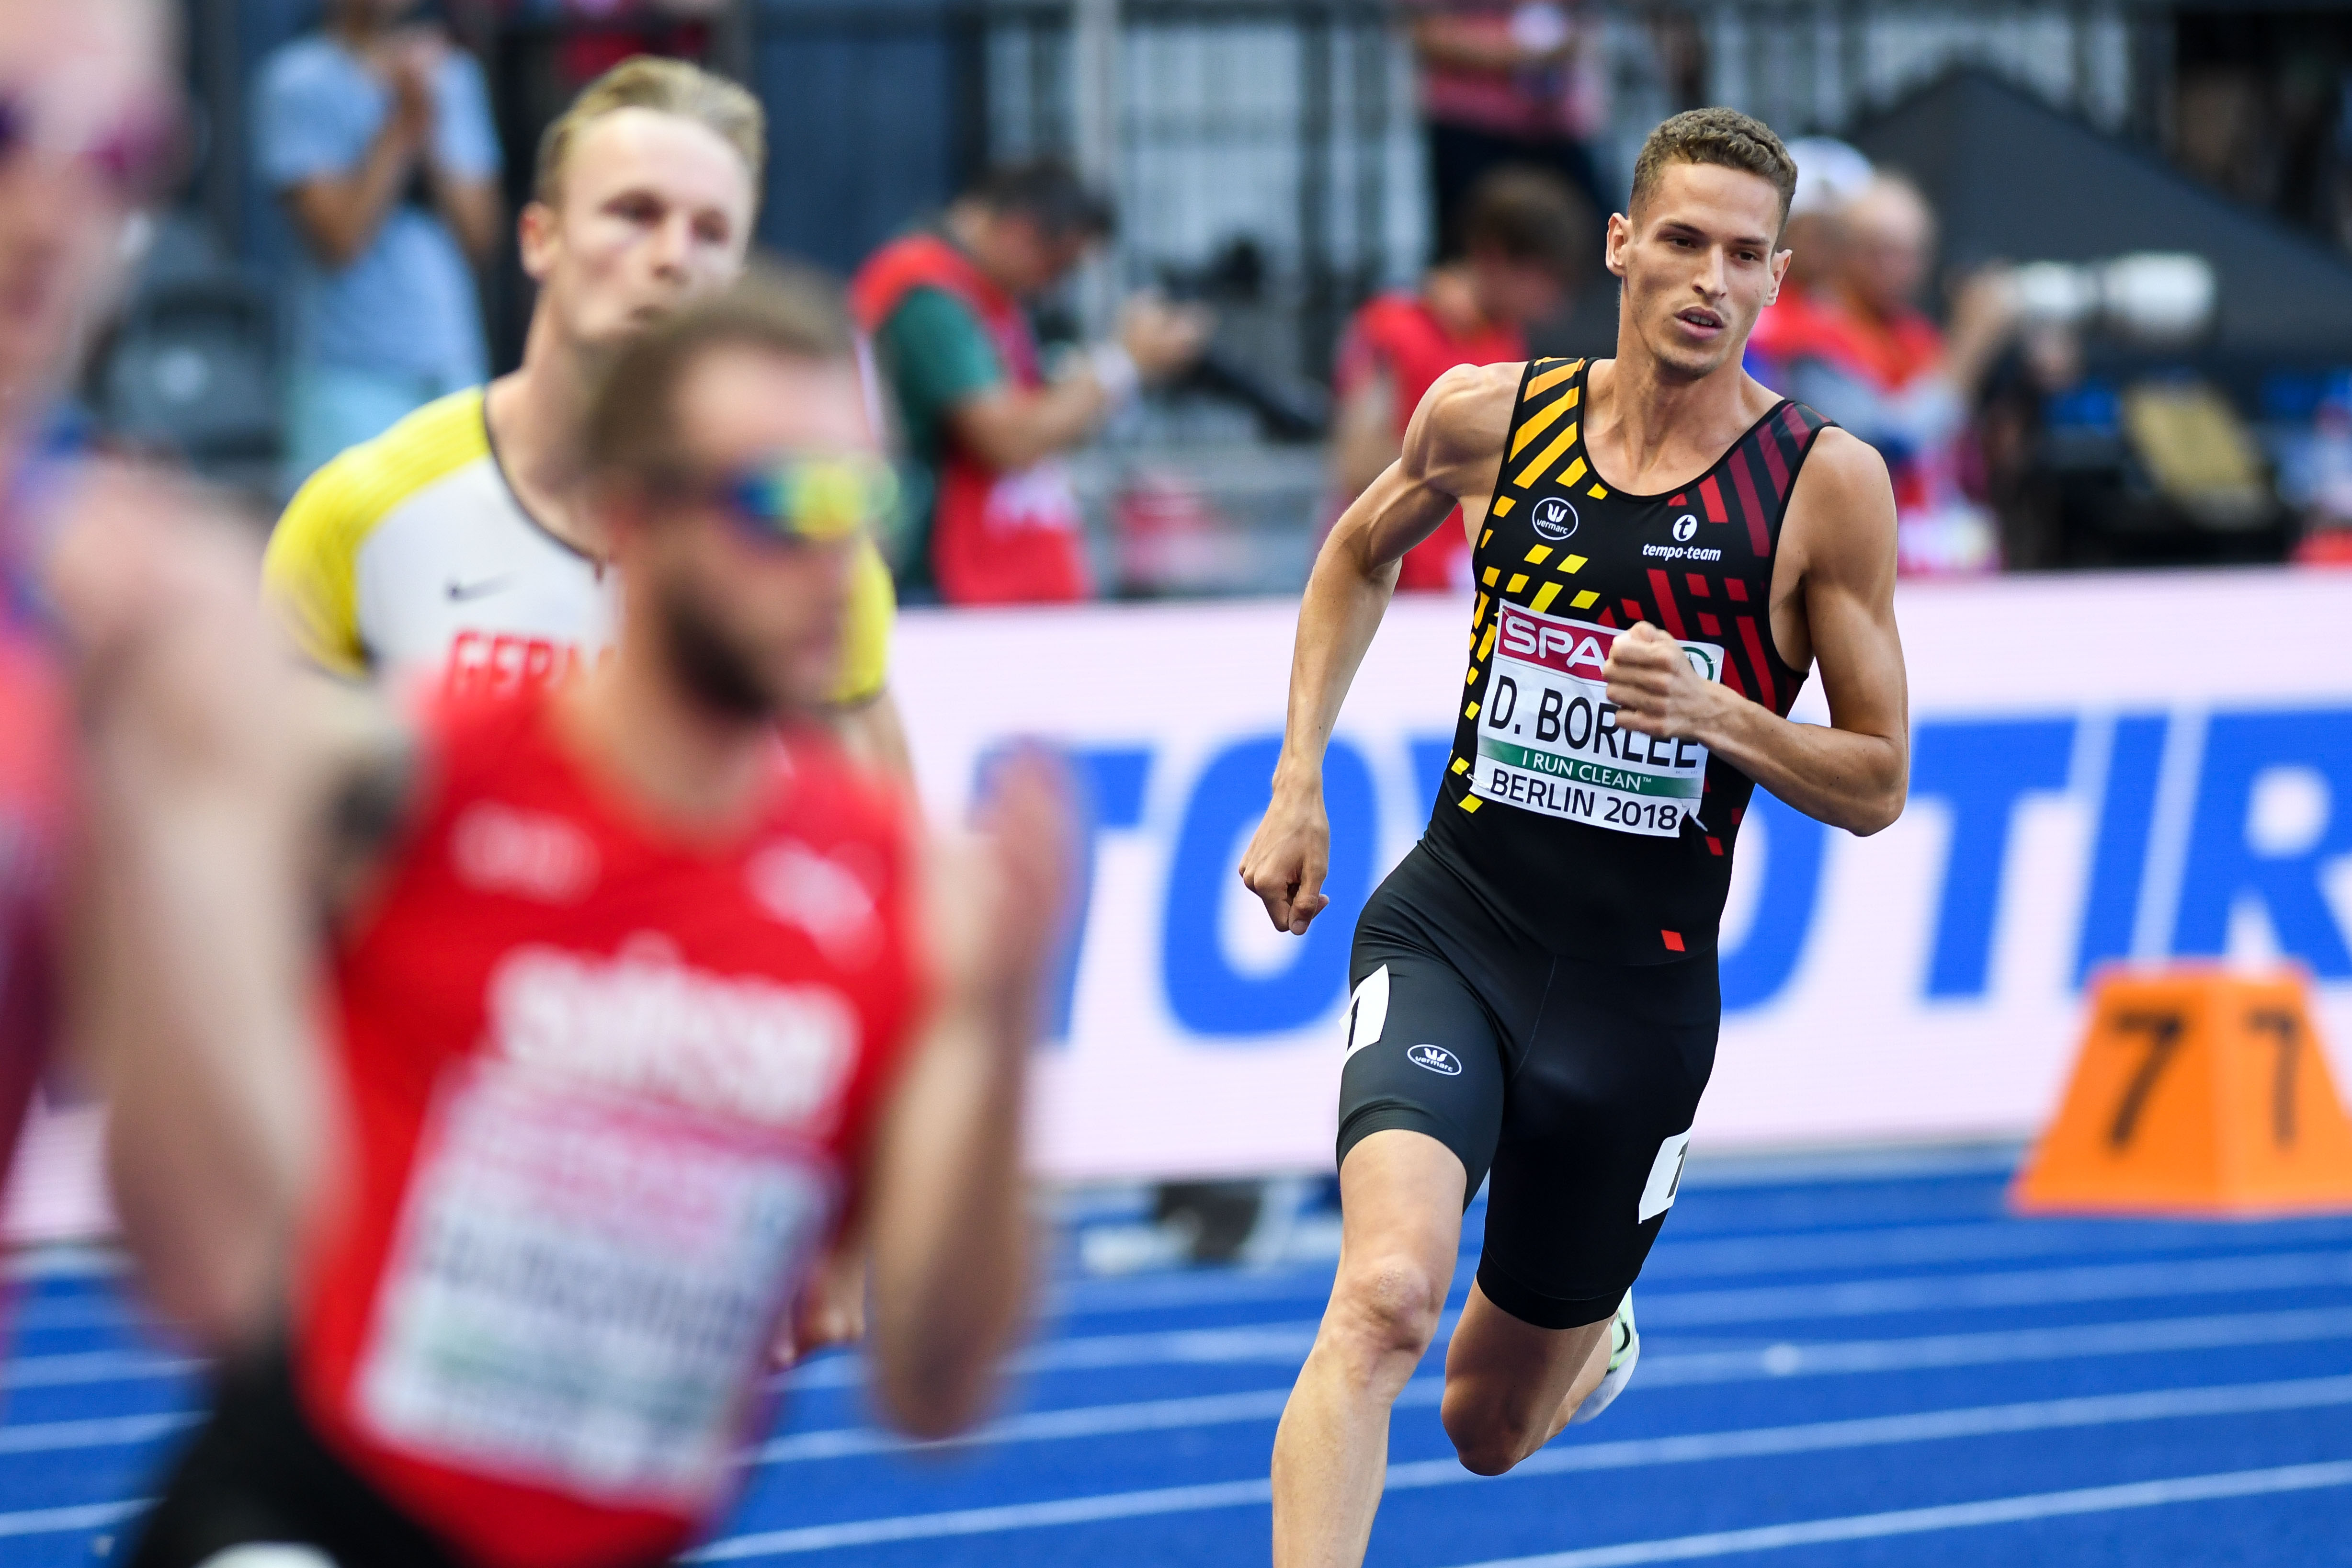 Dylan Borlee 400m Berlijn 2018